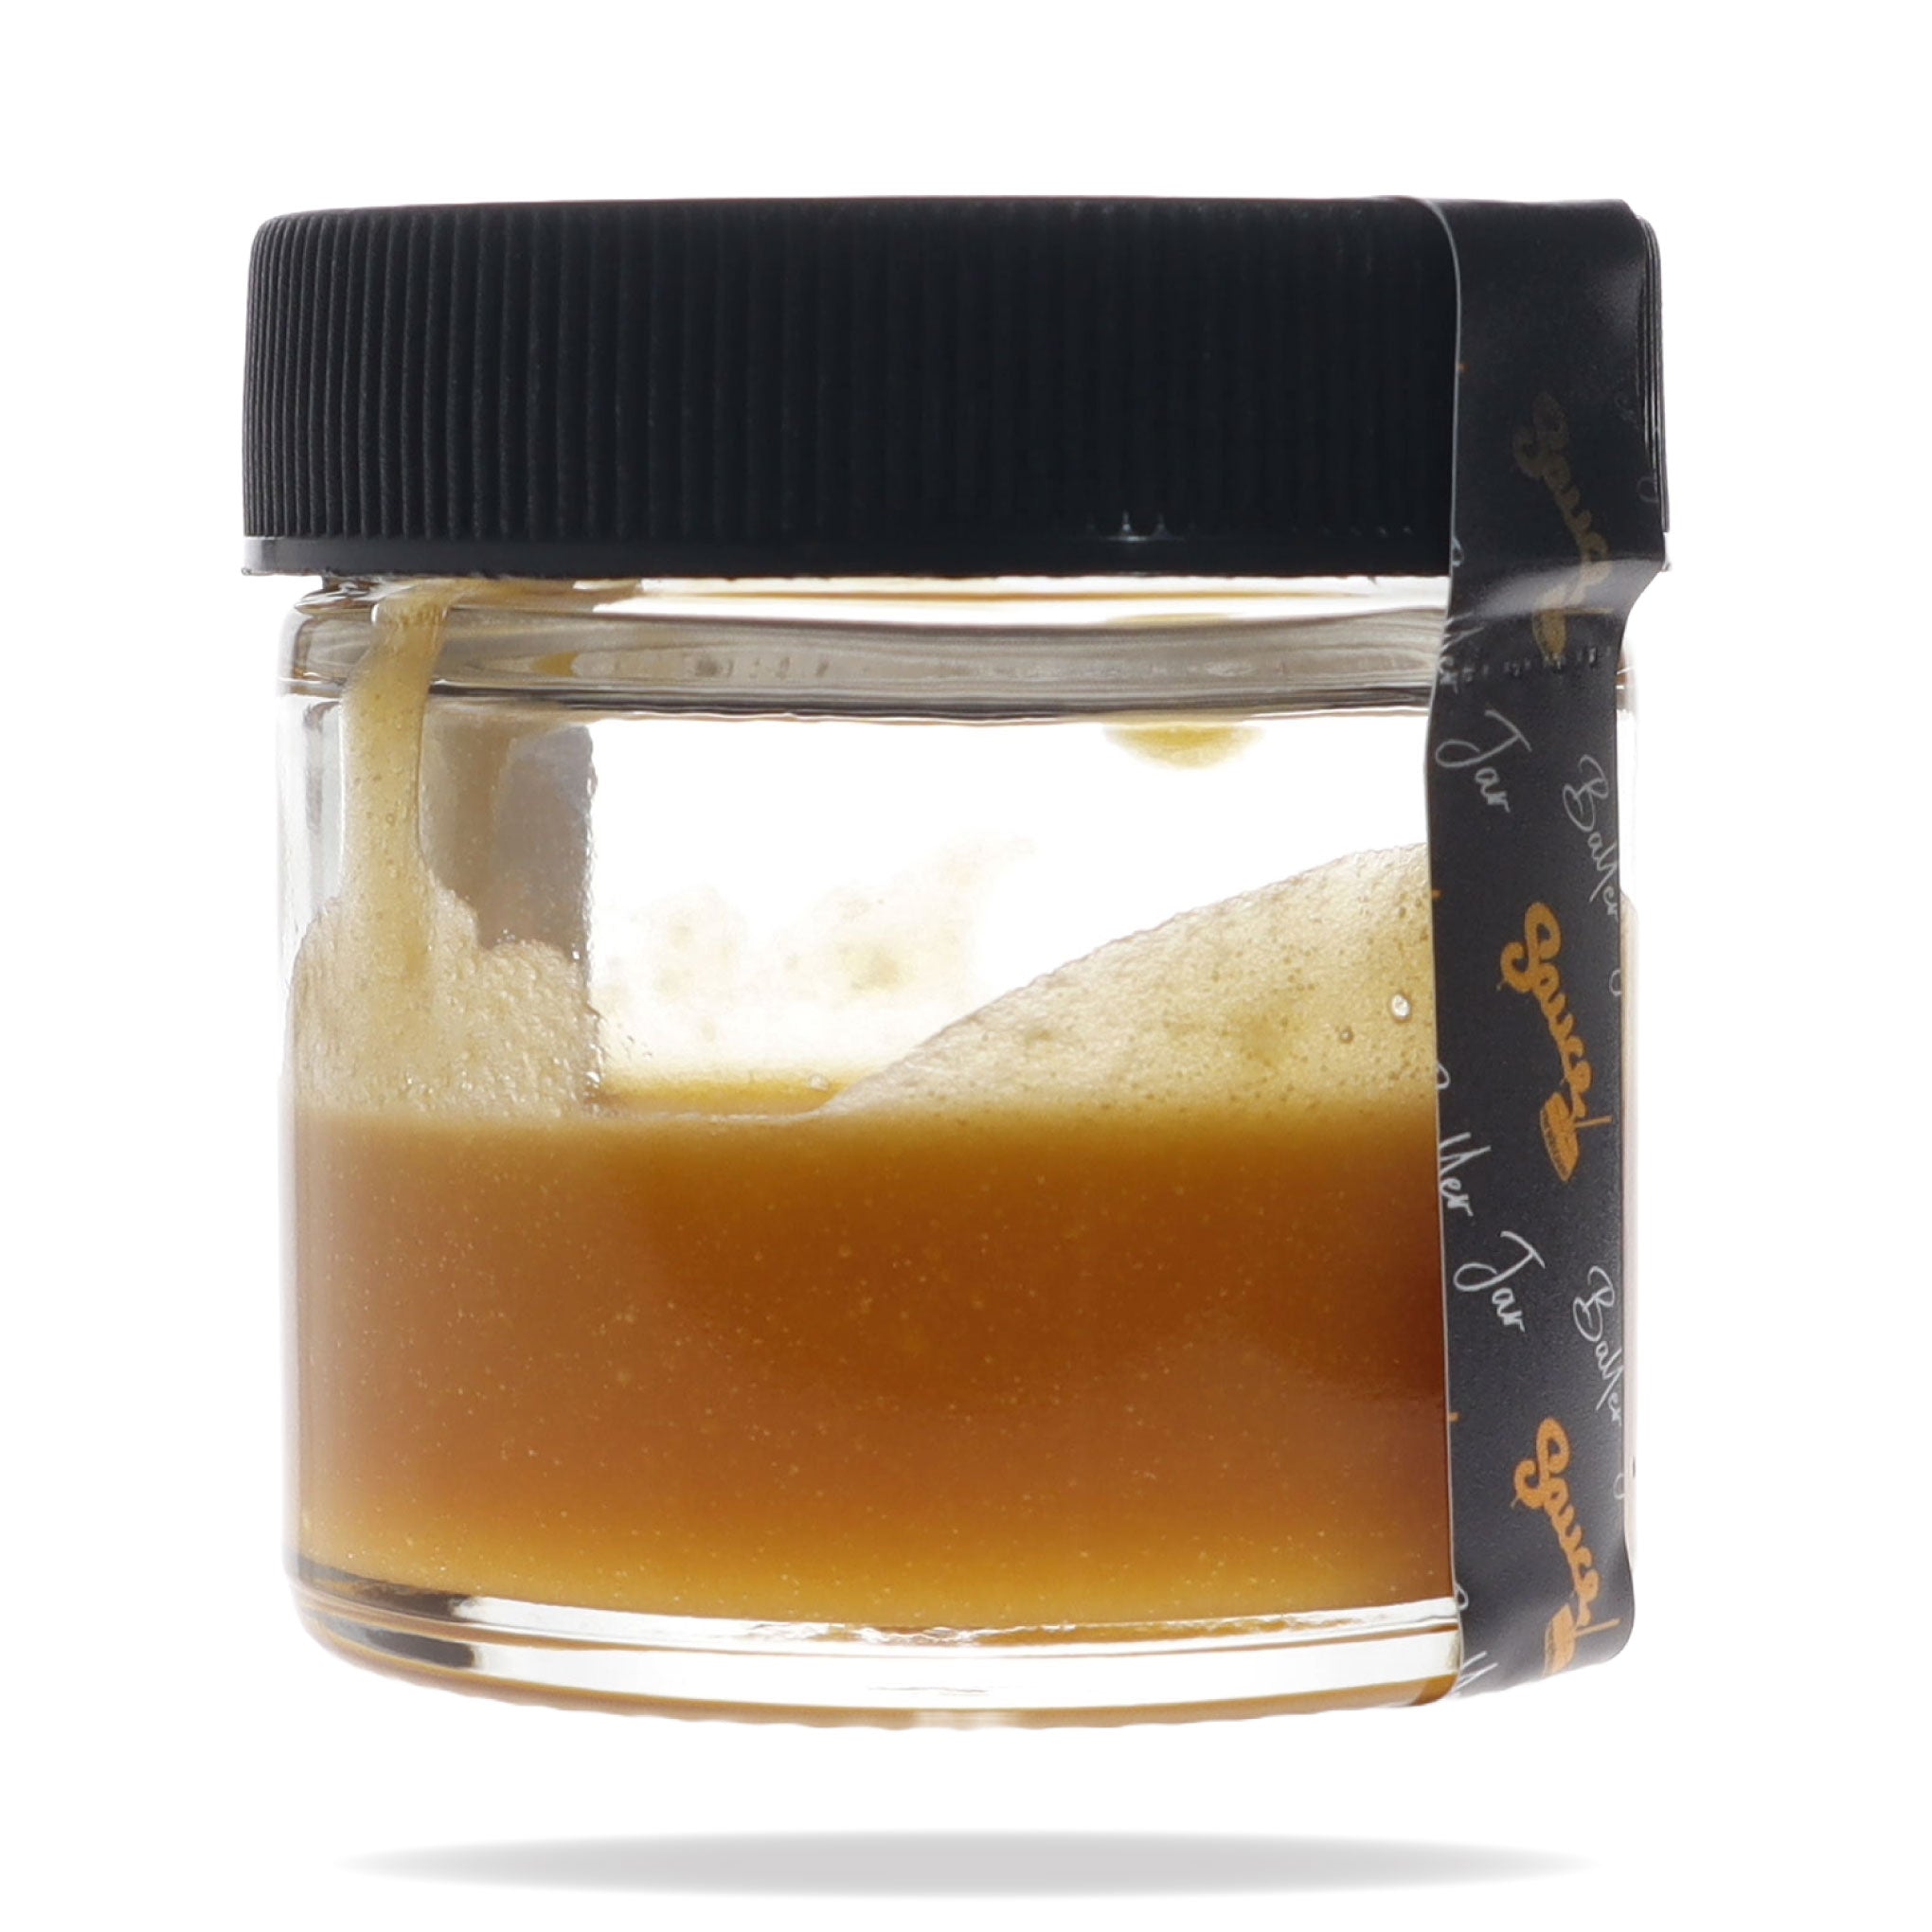 Image of Super Sour Space Candy CBD Live Resin 14 Gram Baller Jar.